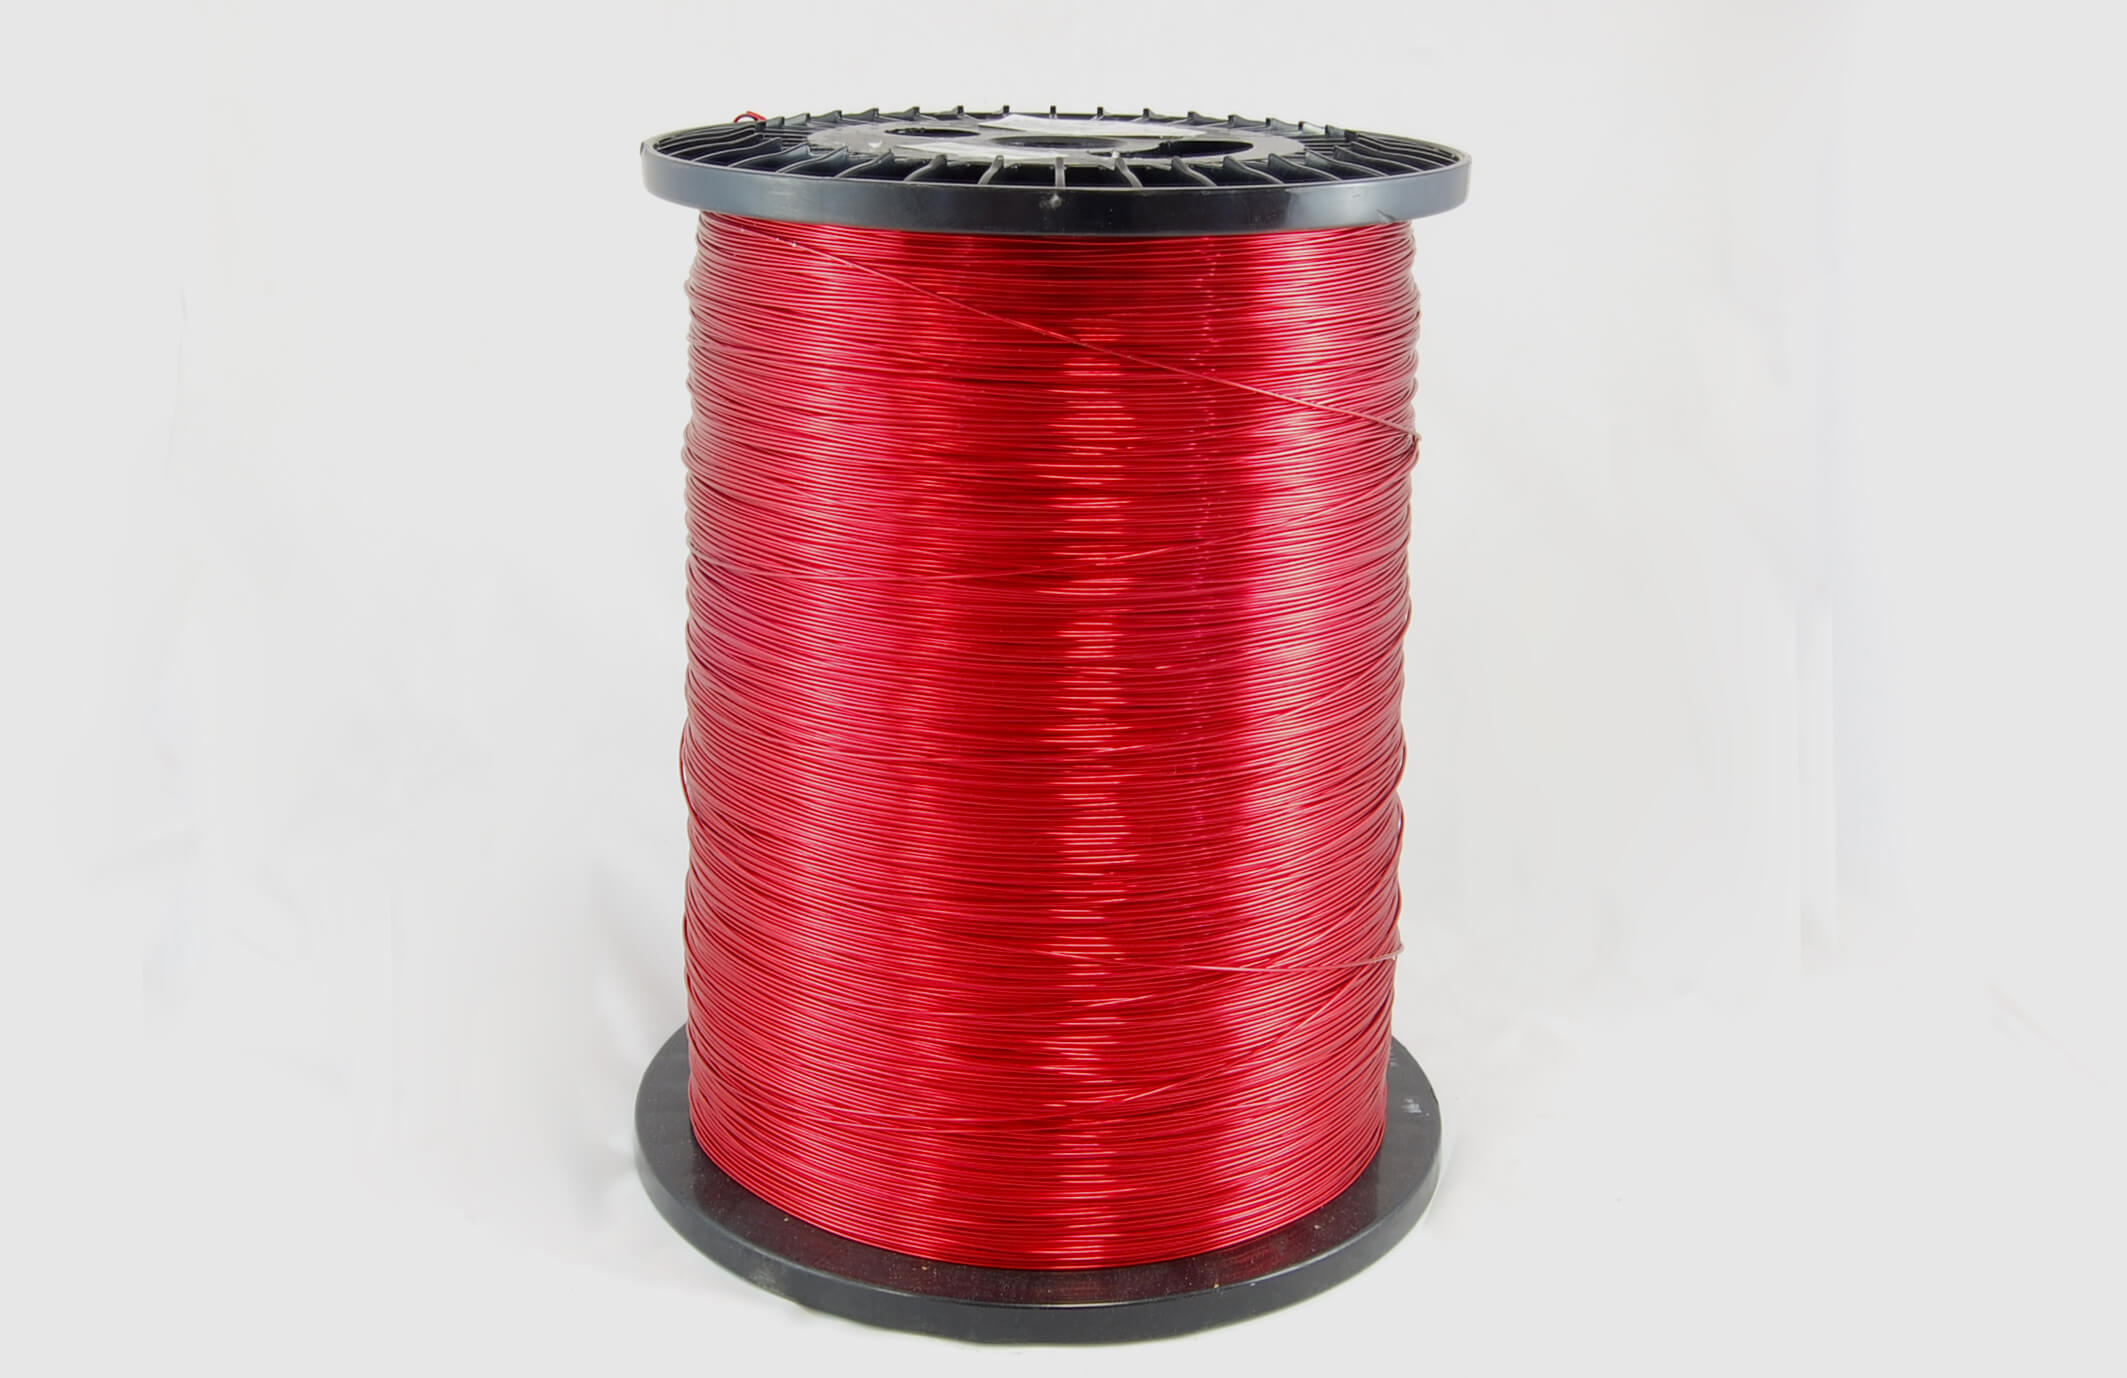 #19 Heavy Nysol  Round HNSR MW 80 Copper Magnet Wire 155°C, red, 85 LB box (average wght.)